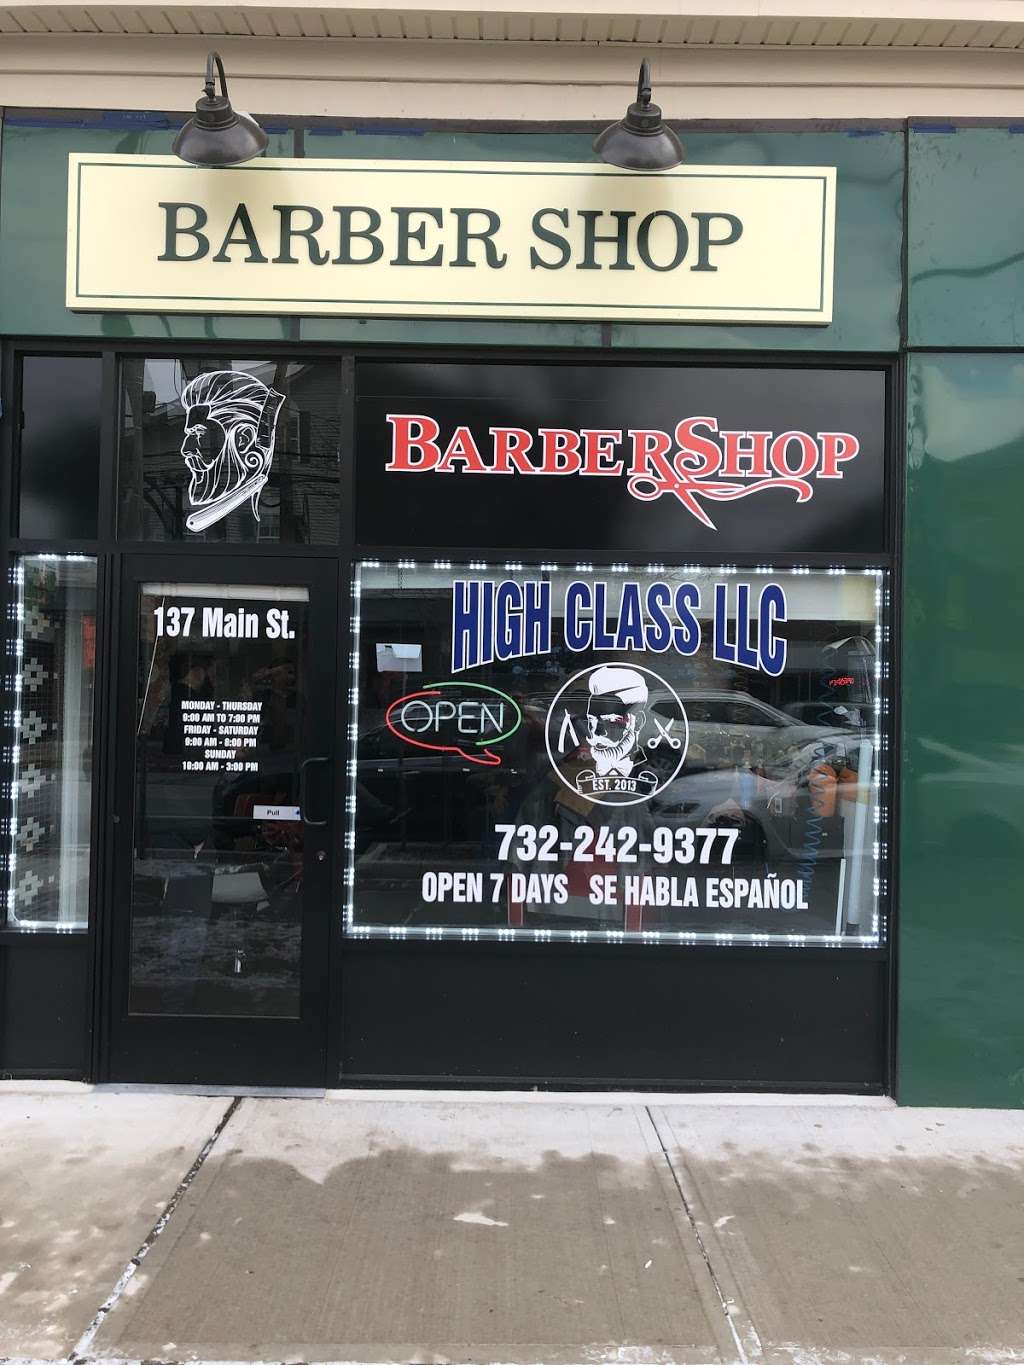 High class barber shop | 137 Main St, Matawan, NJ 07747, USA | Phone: (732) 242-9377